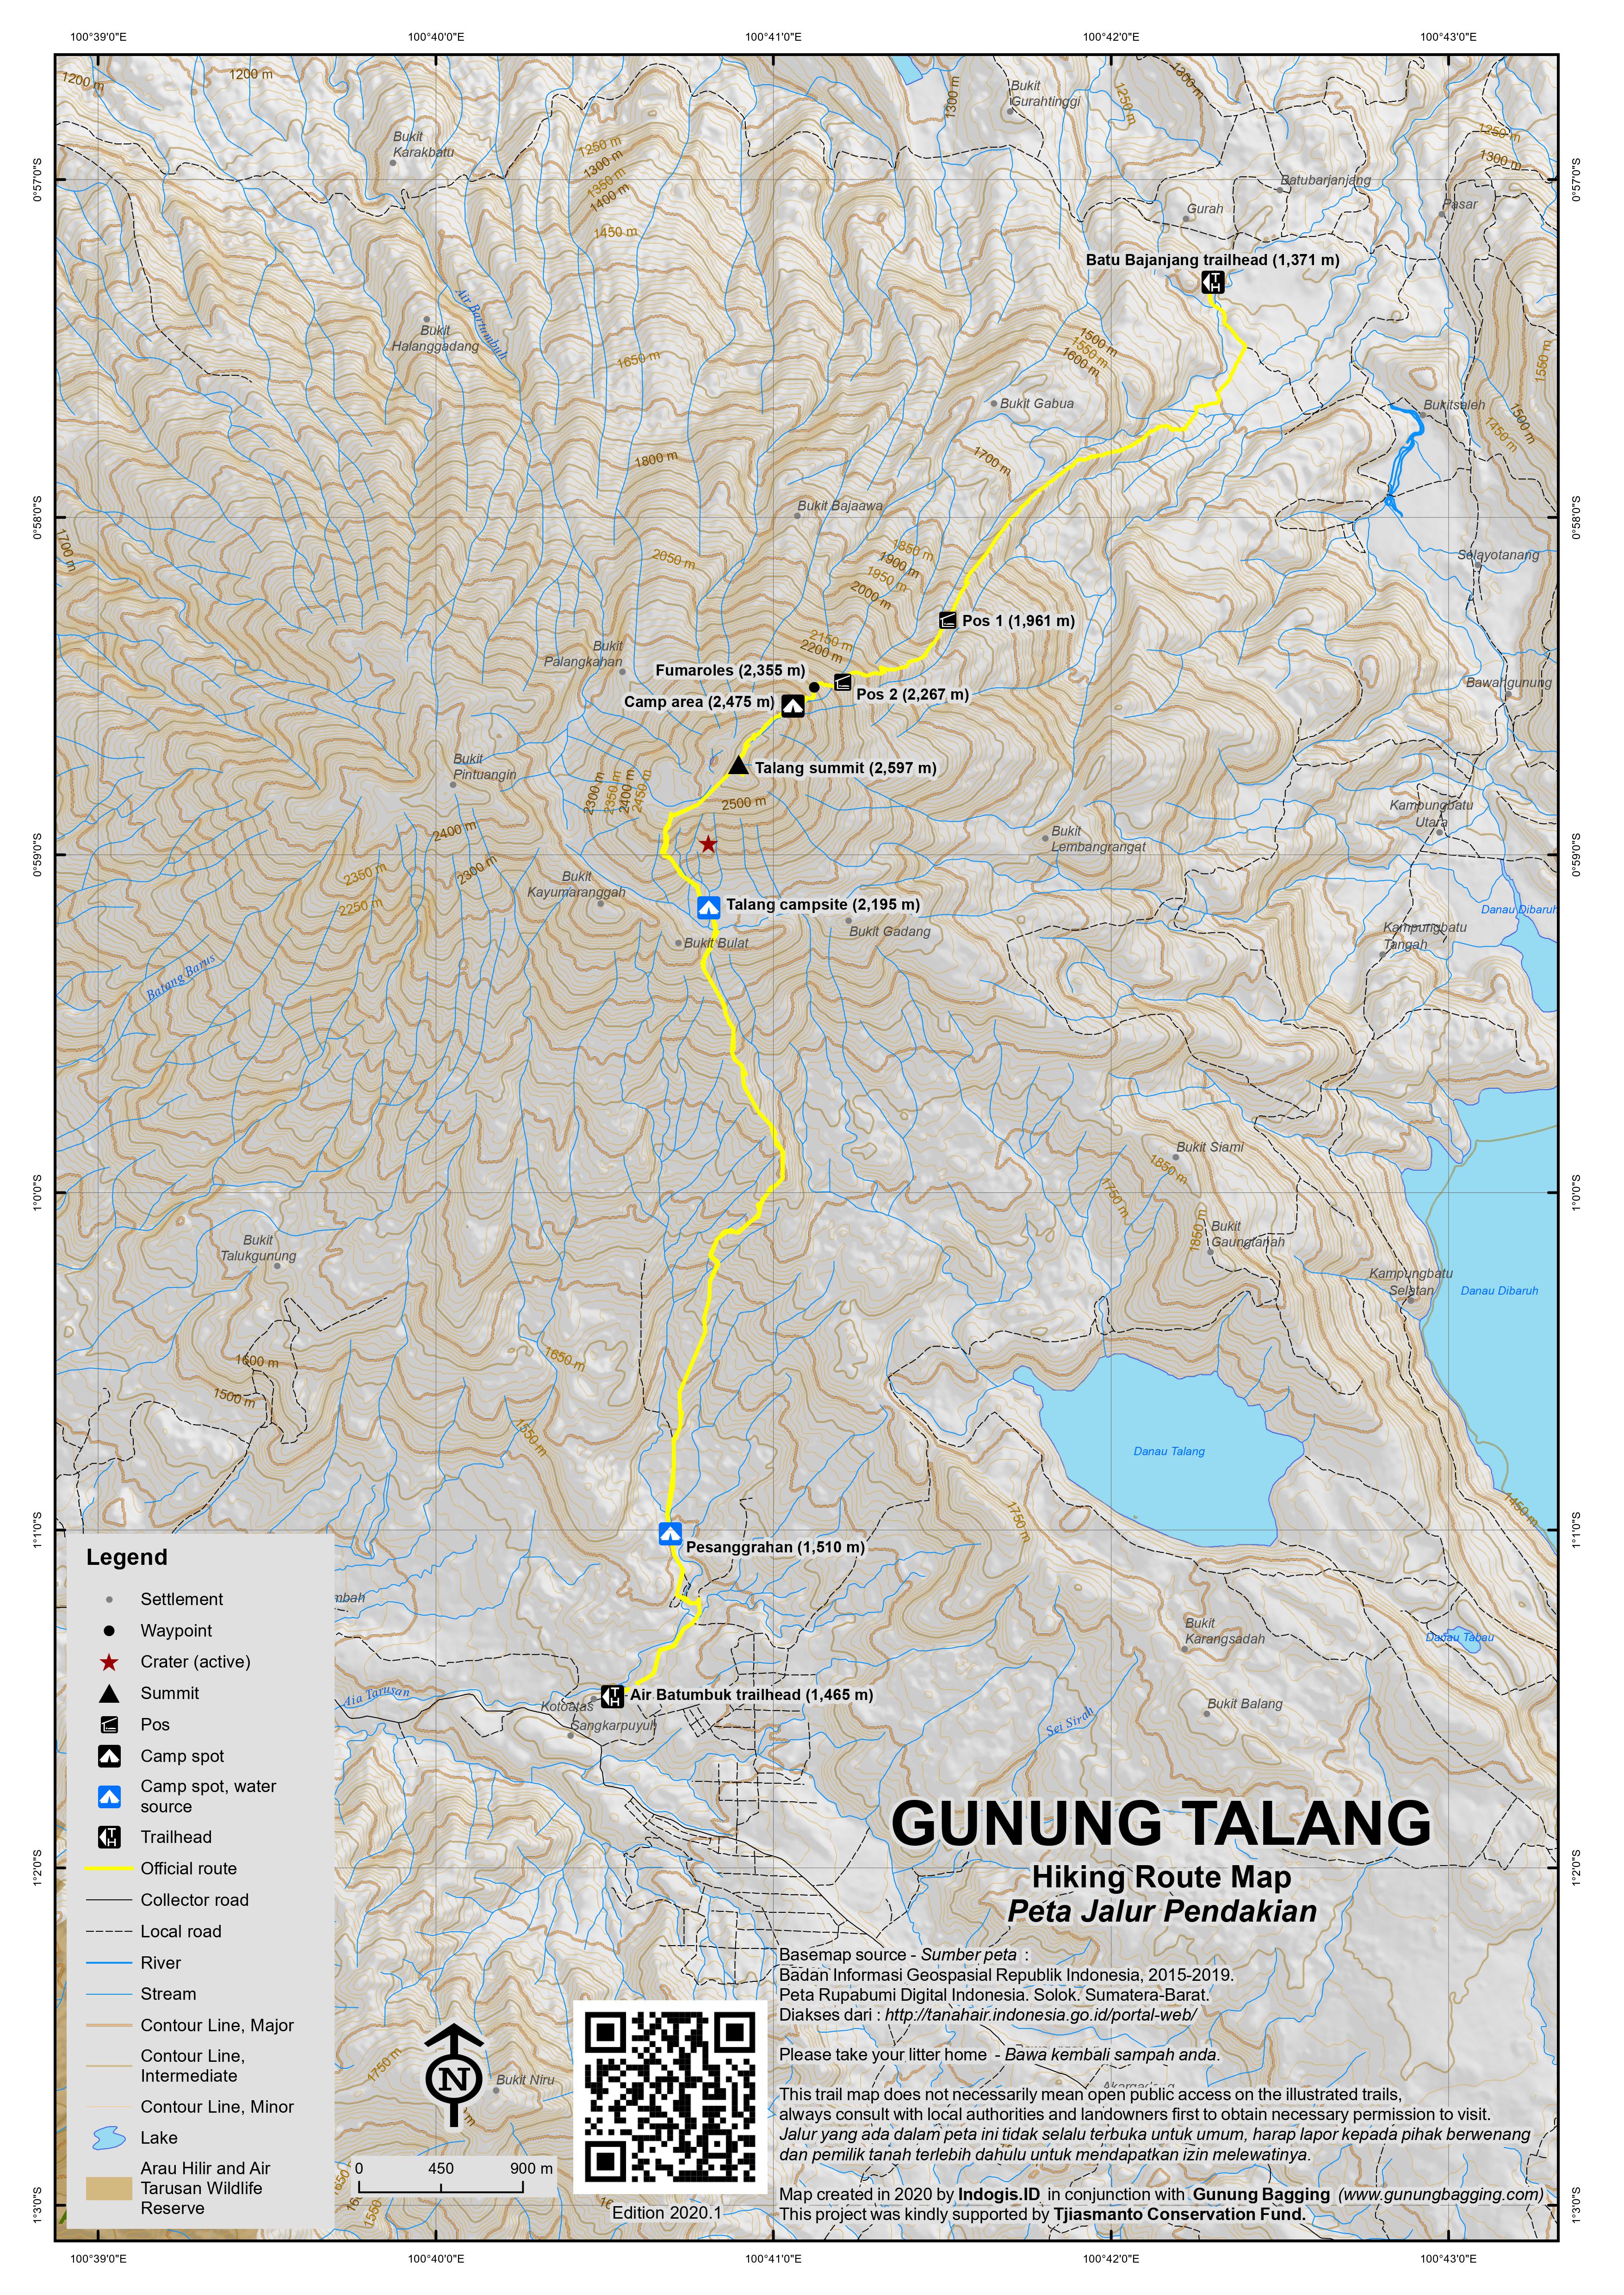 Peta Jalur Pendakian Gunung Talang